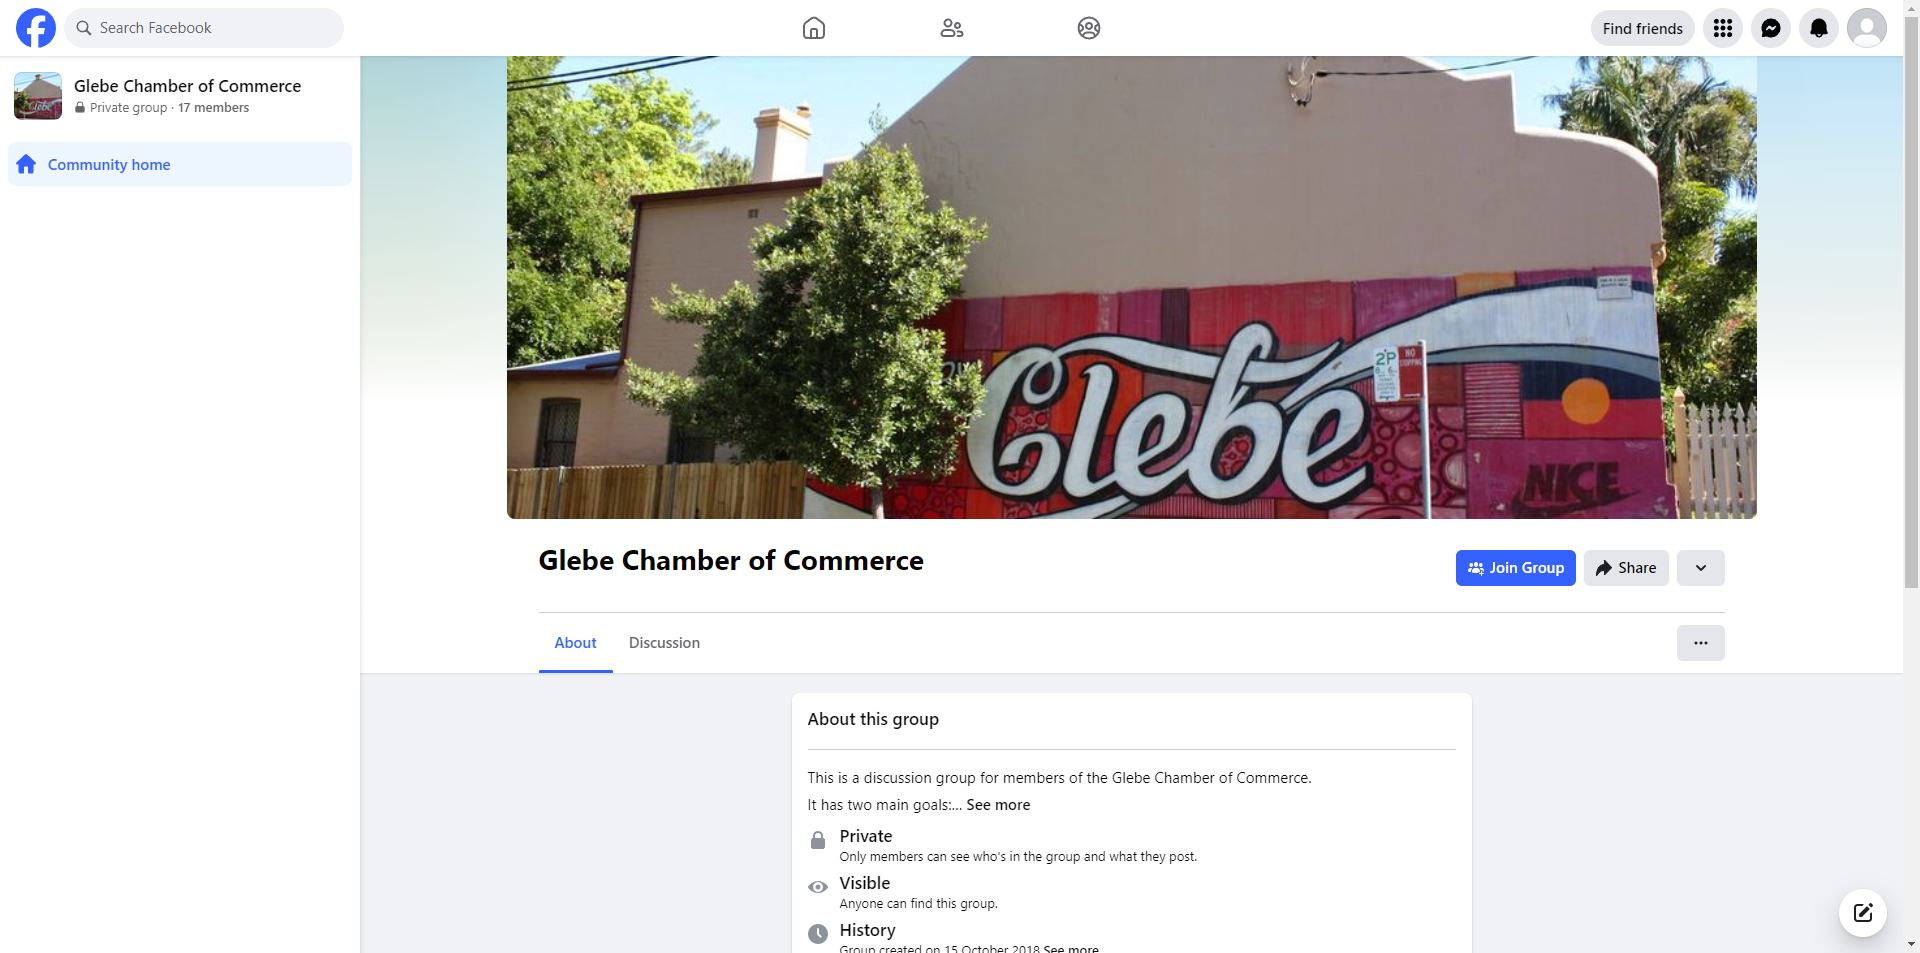 Glebe Chamber of Commerce